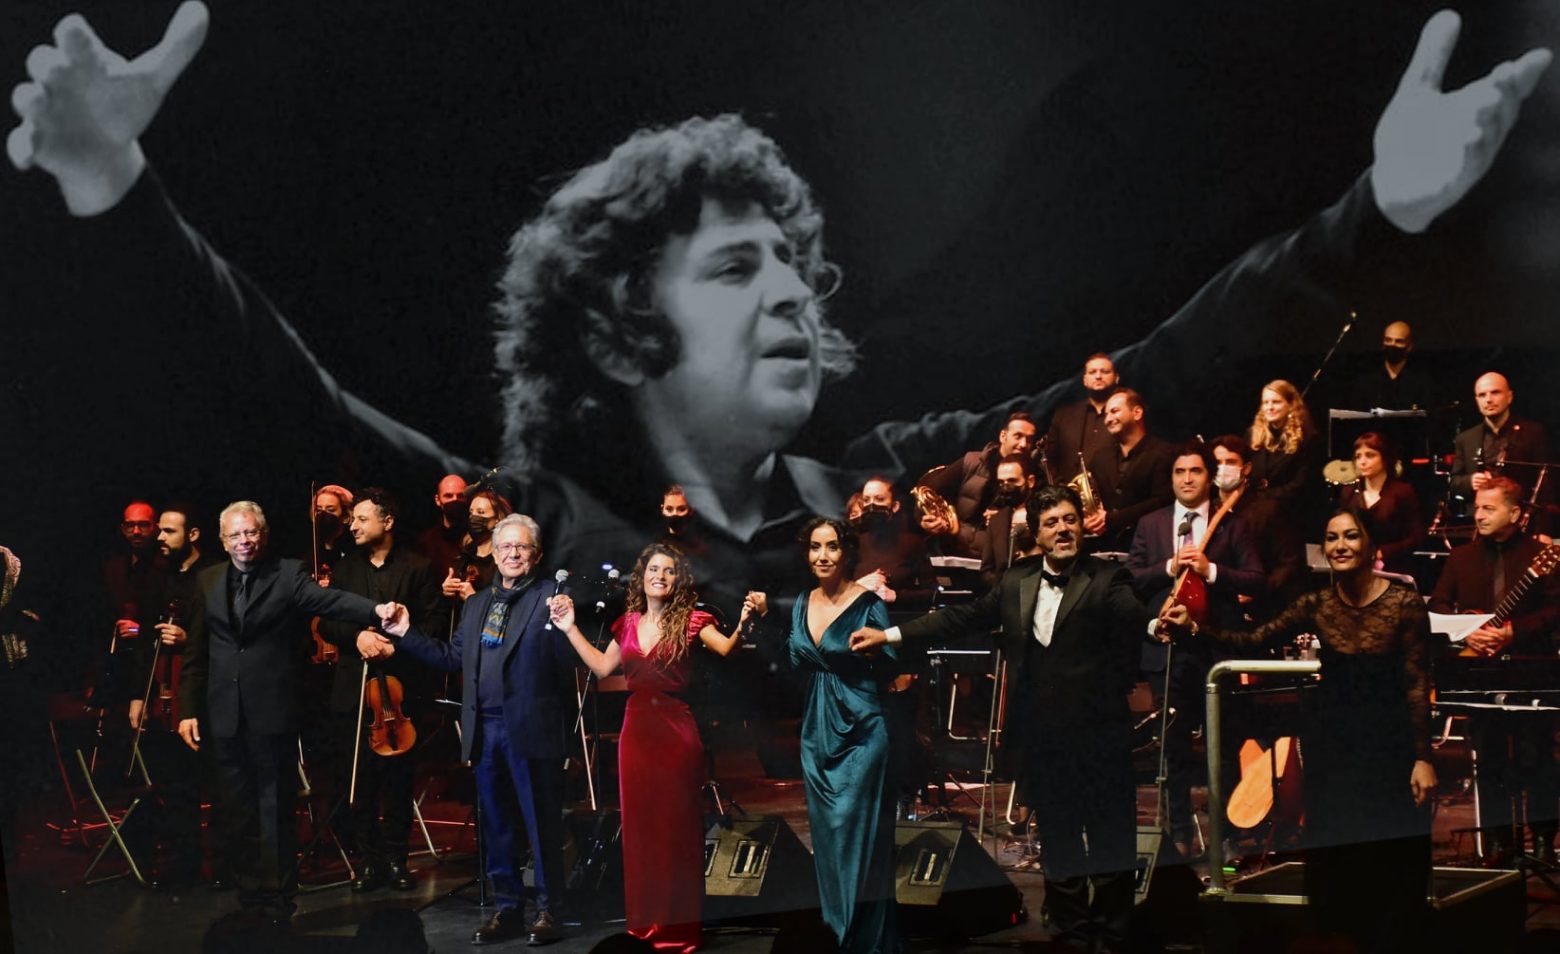 Τουρκία - Μεγάλη συναυλία αφιερωμένη στον Μίκη Θεοδωράκη από τον Ζουλφί Λιβανελί